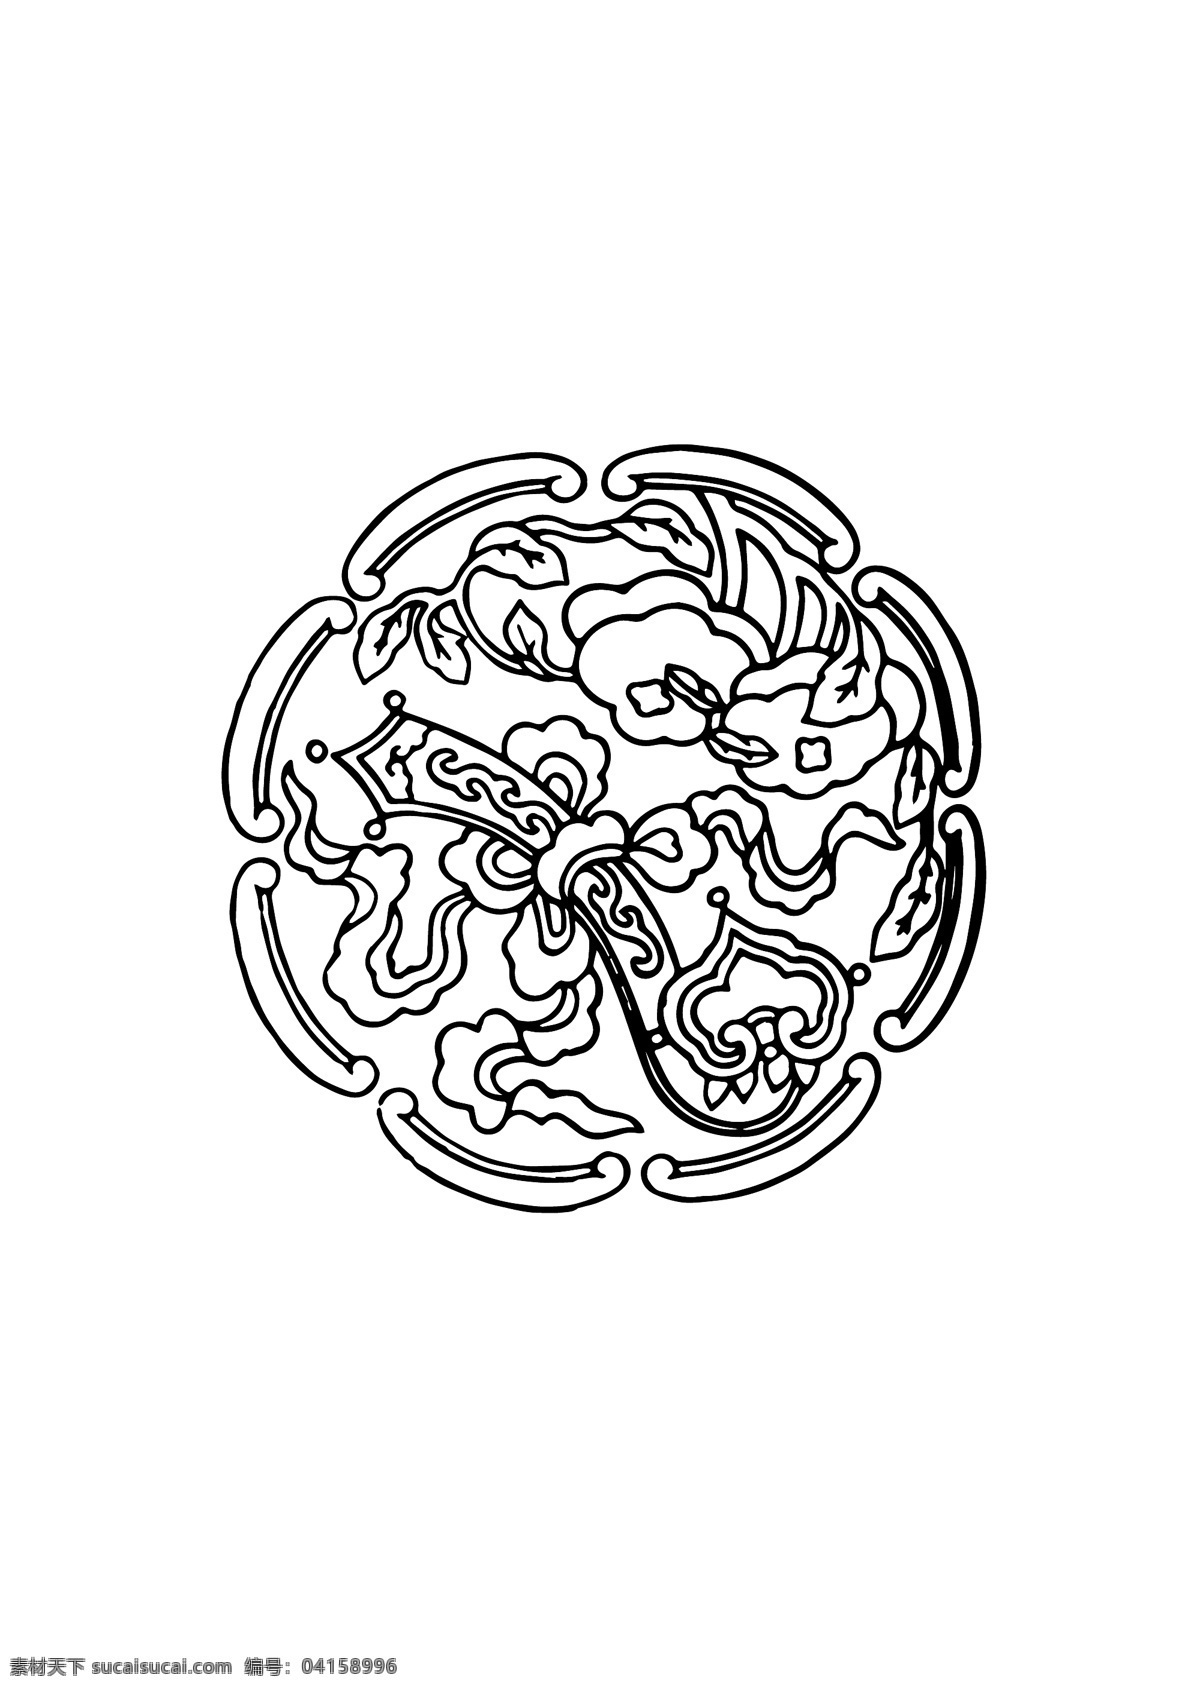 中国古典花纹 中国 古典 花纹 矢量花纹 如意 如意纹 吉祥纹 矢量 纹样 底纹边框 花边花纹